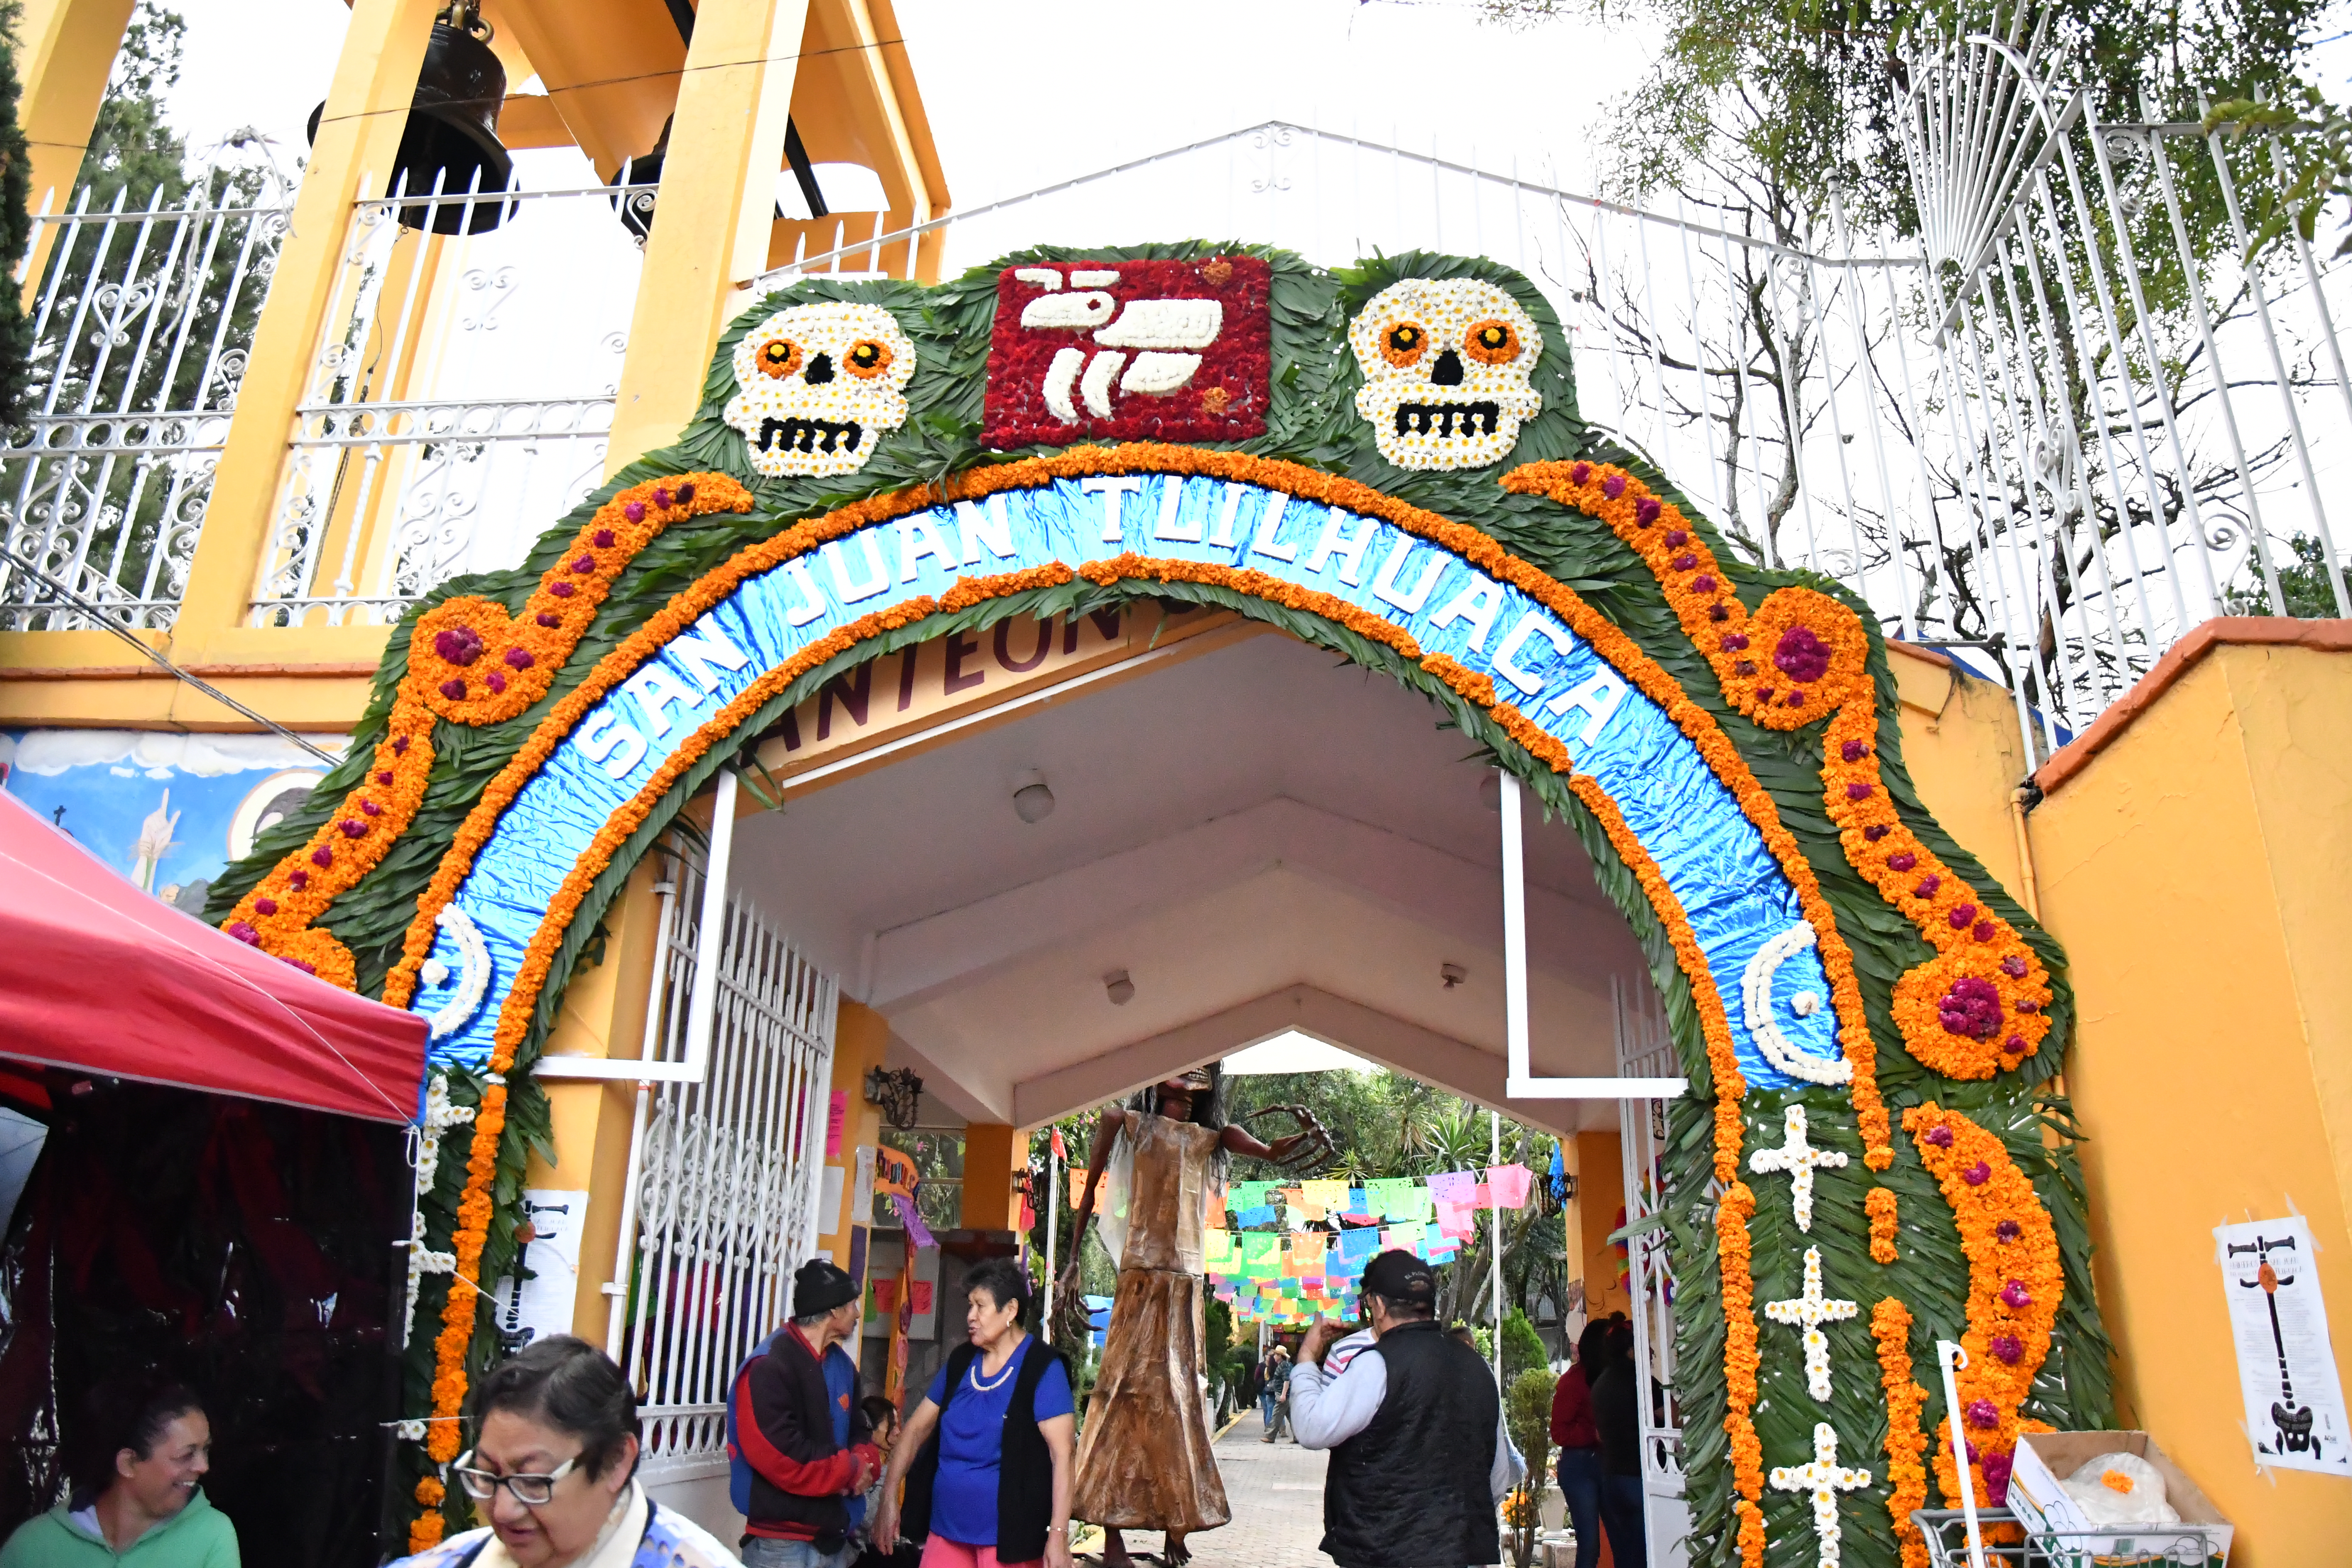 Honran a los muertos en San Juan Tlihuaca